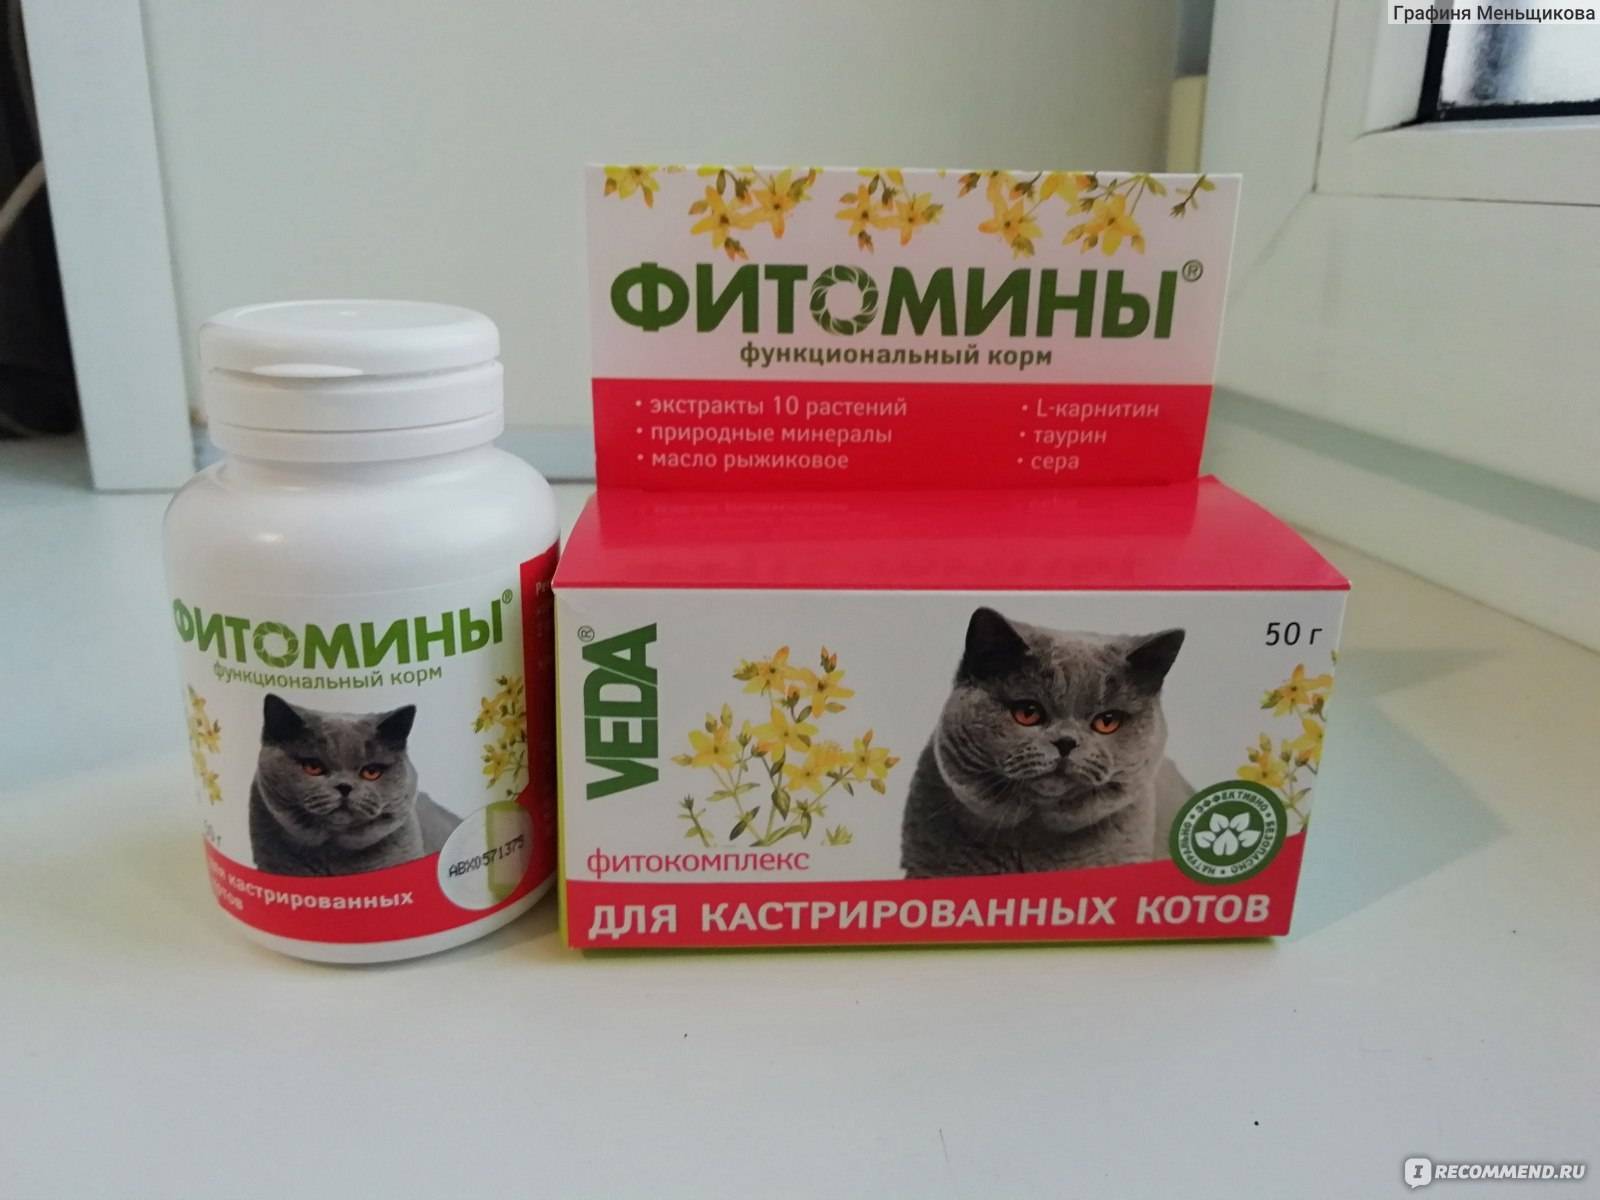 Витамины для кошек:  для шерсти, иммунитета, какие лучше